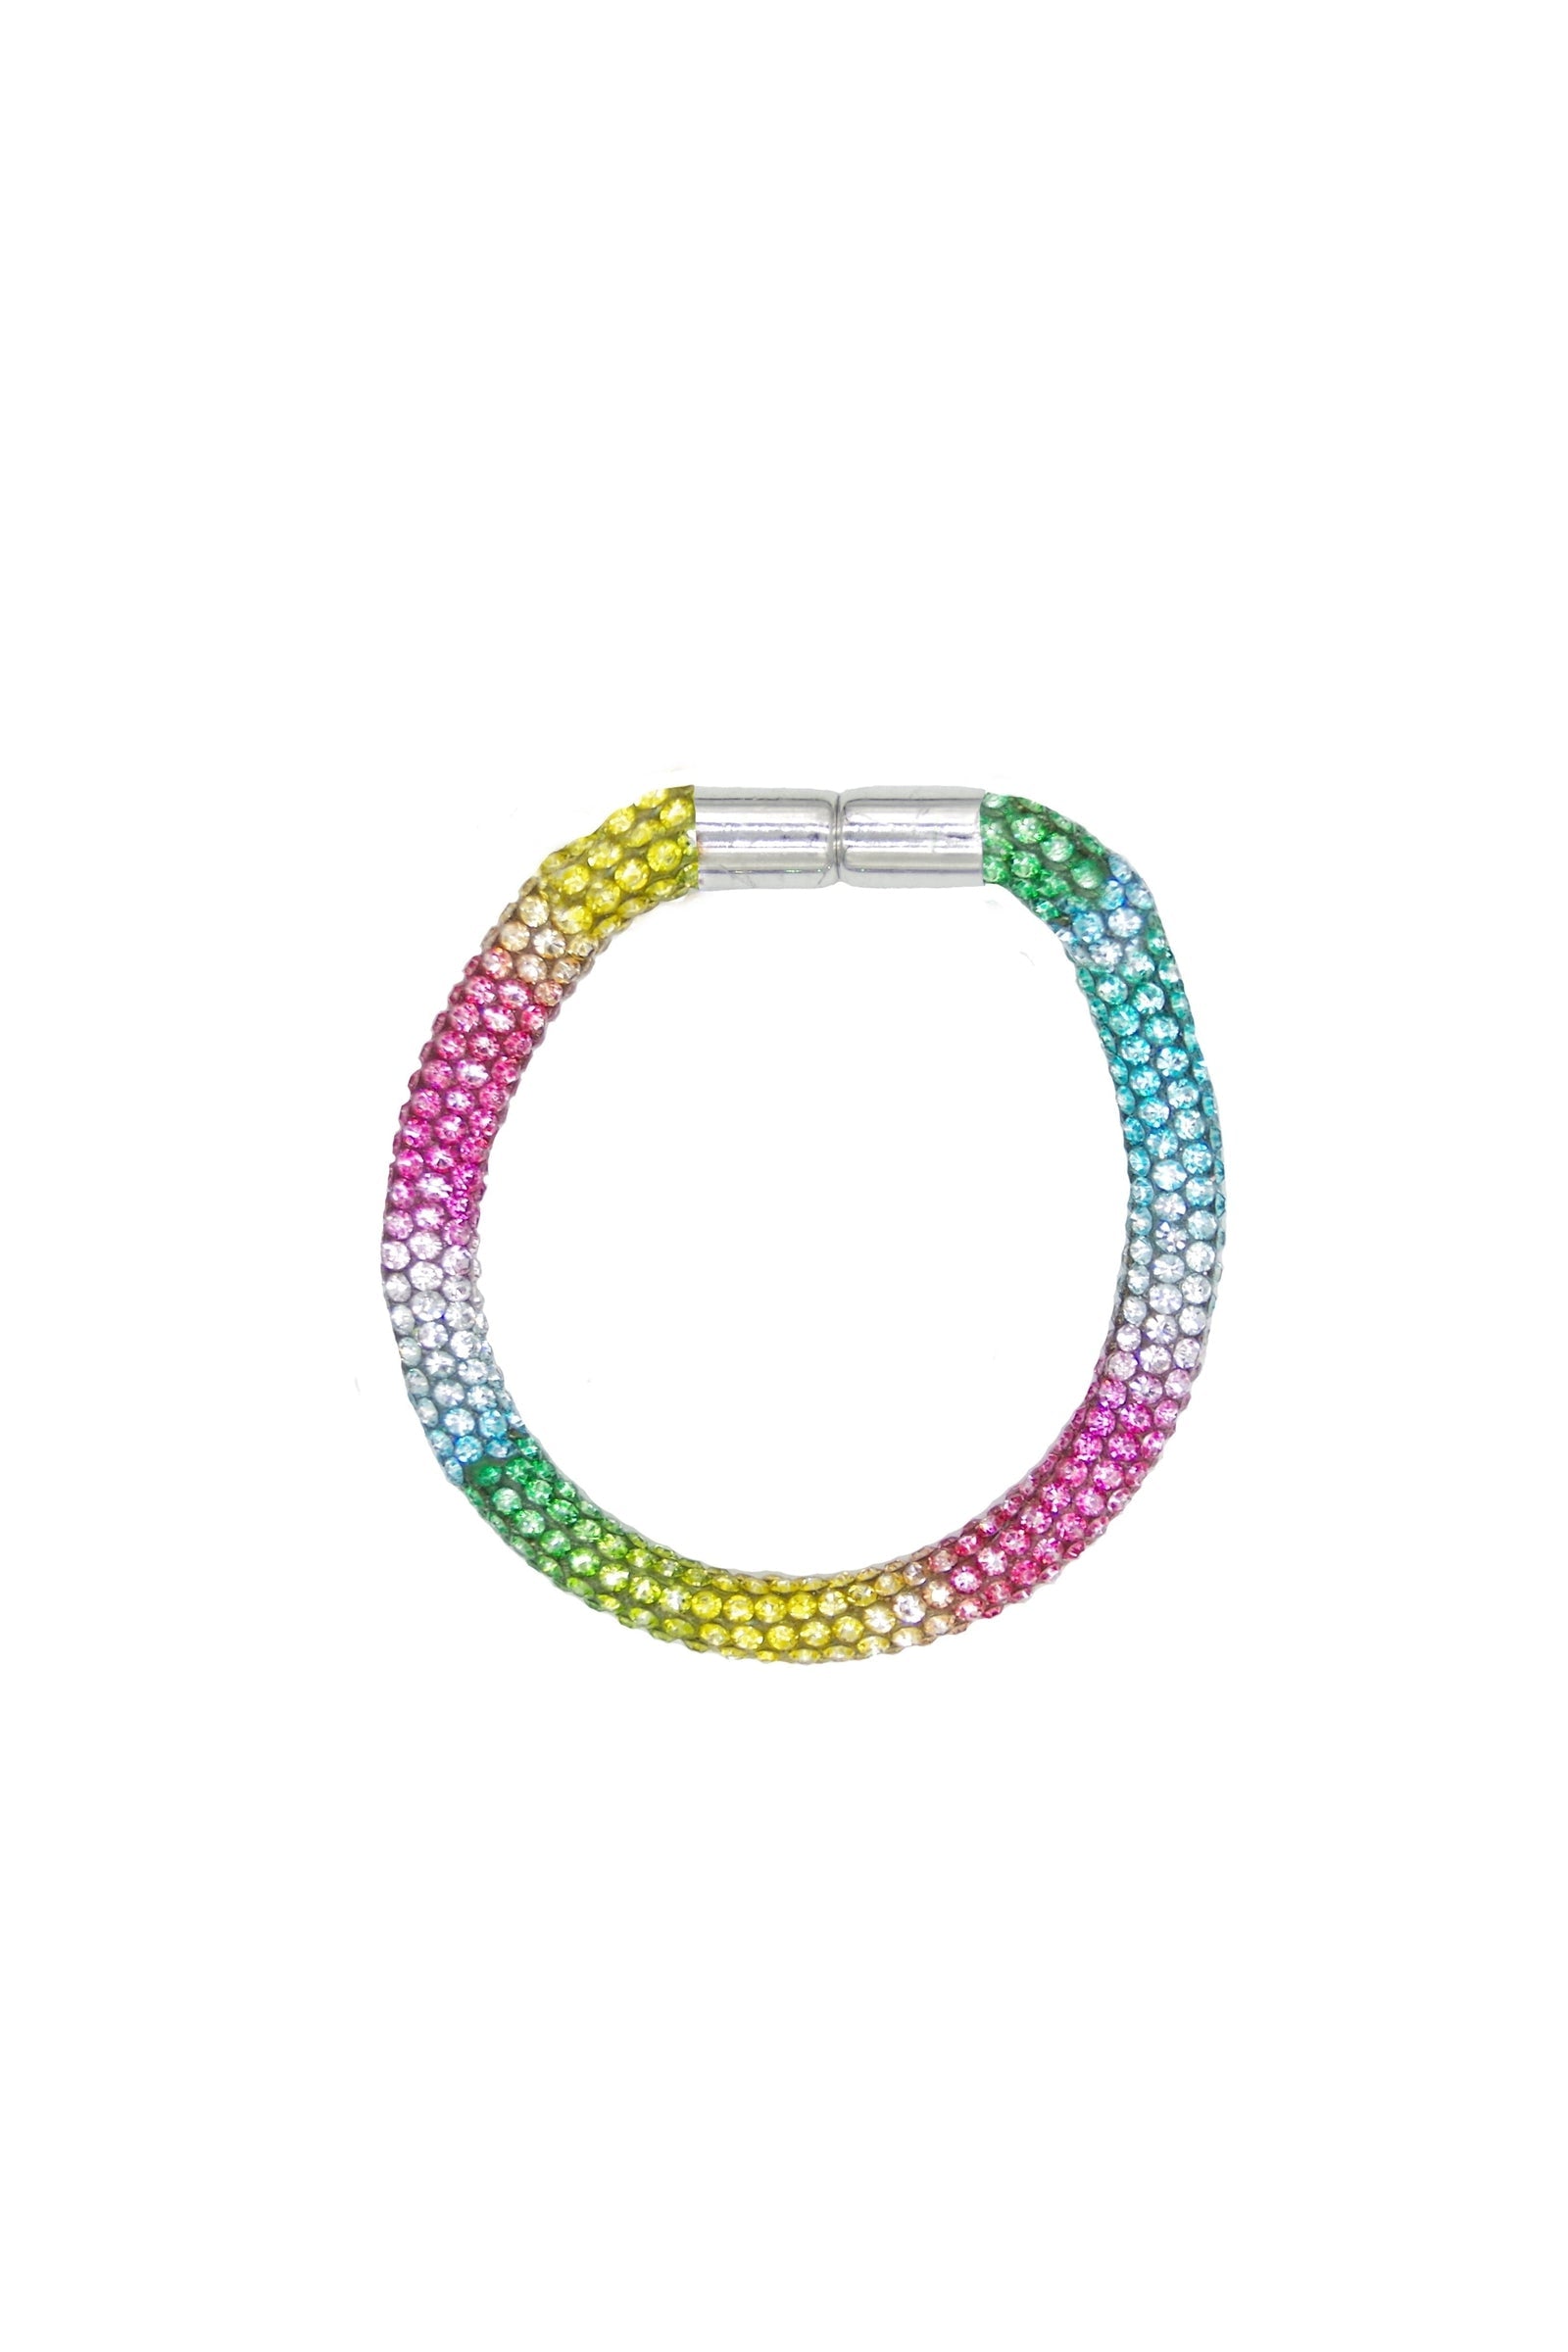 Rockin’ Rainbow Bracelet by Great Pretenders #84106